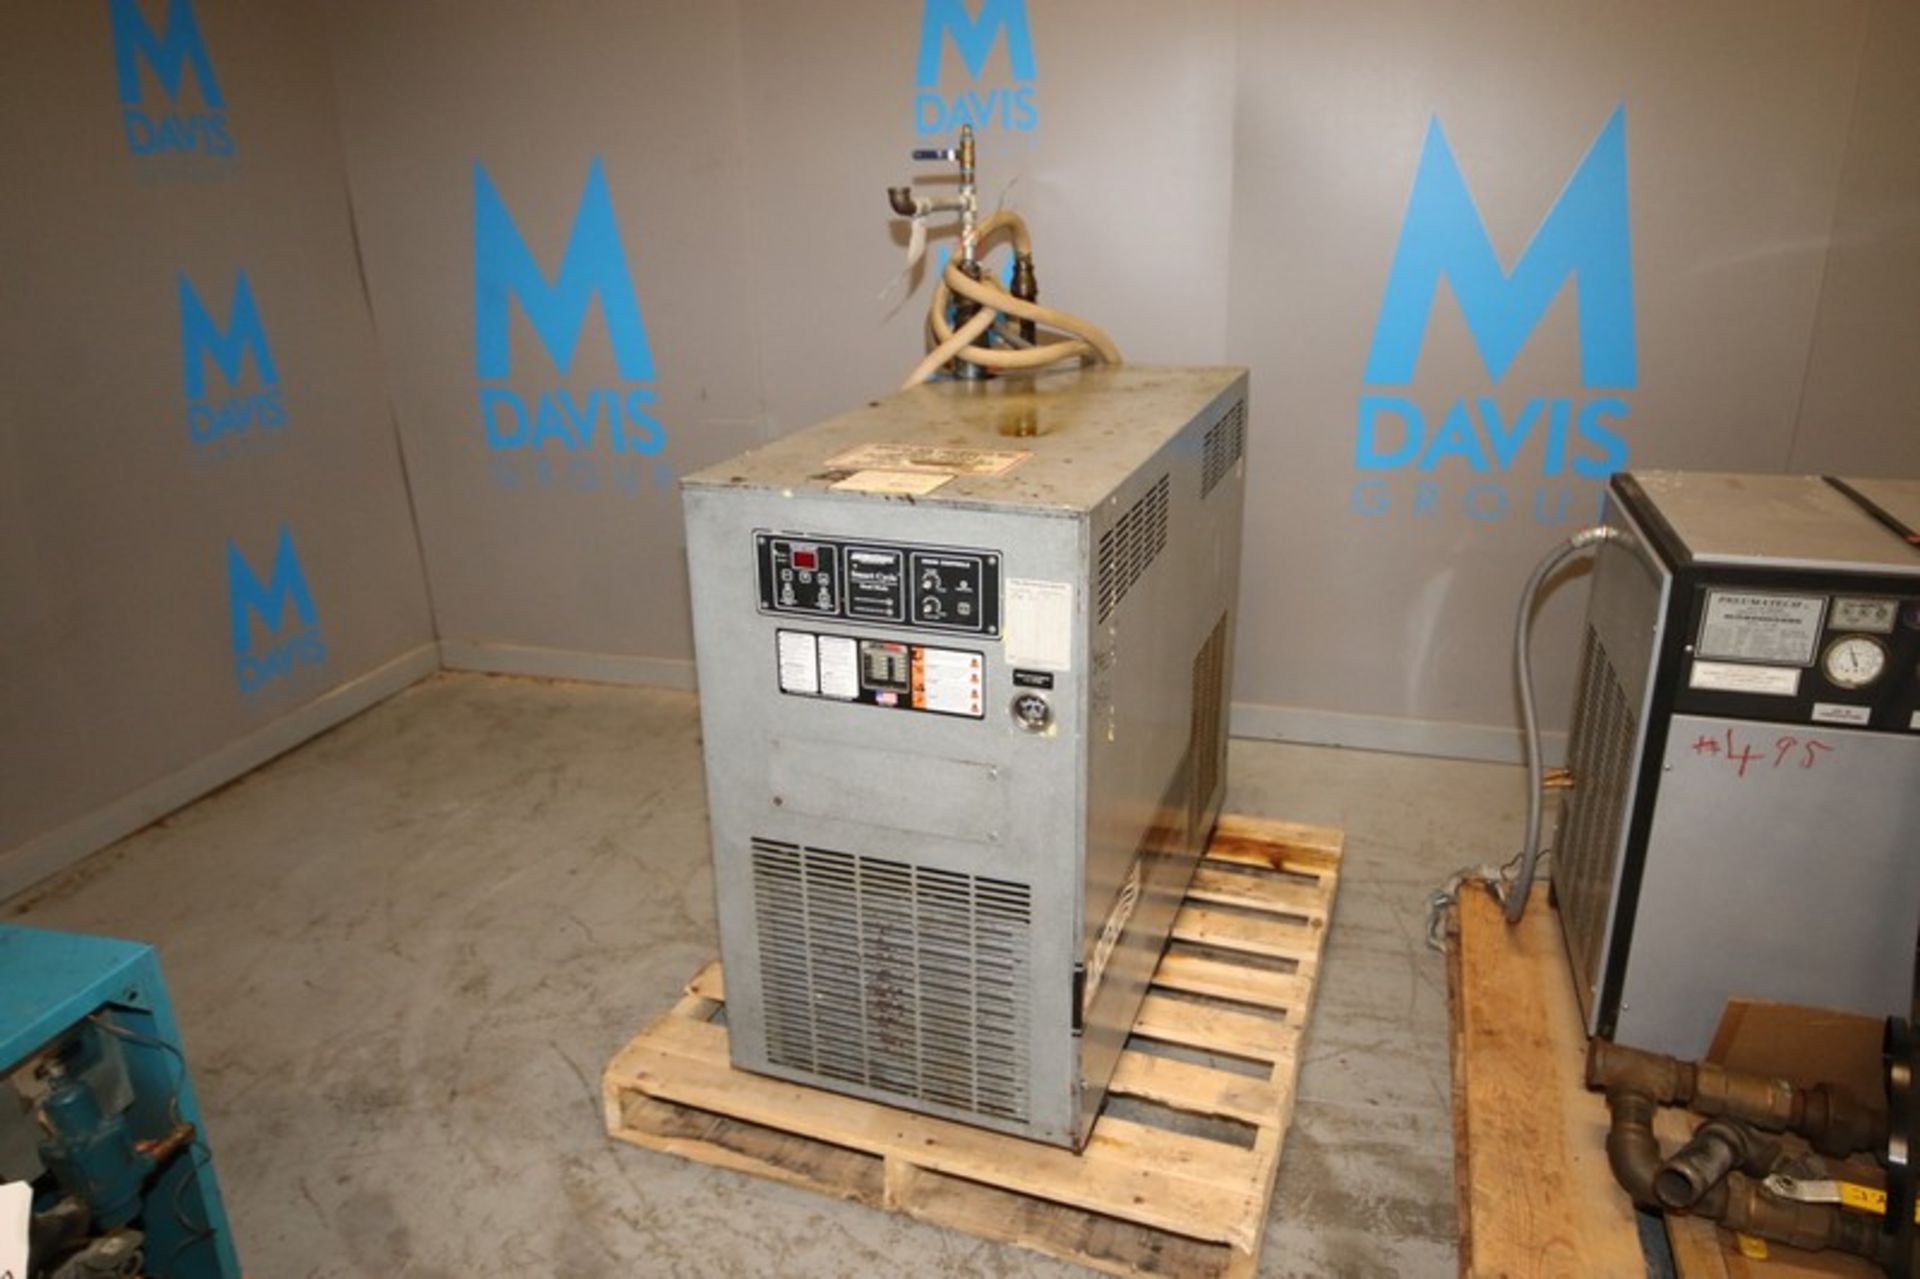 Airtek Refrigerated Air Dryer, M/N CT-220, S/N